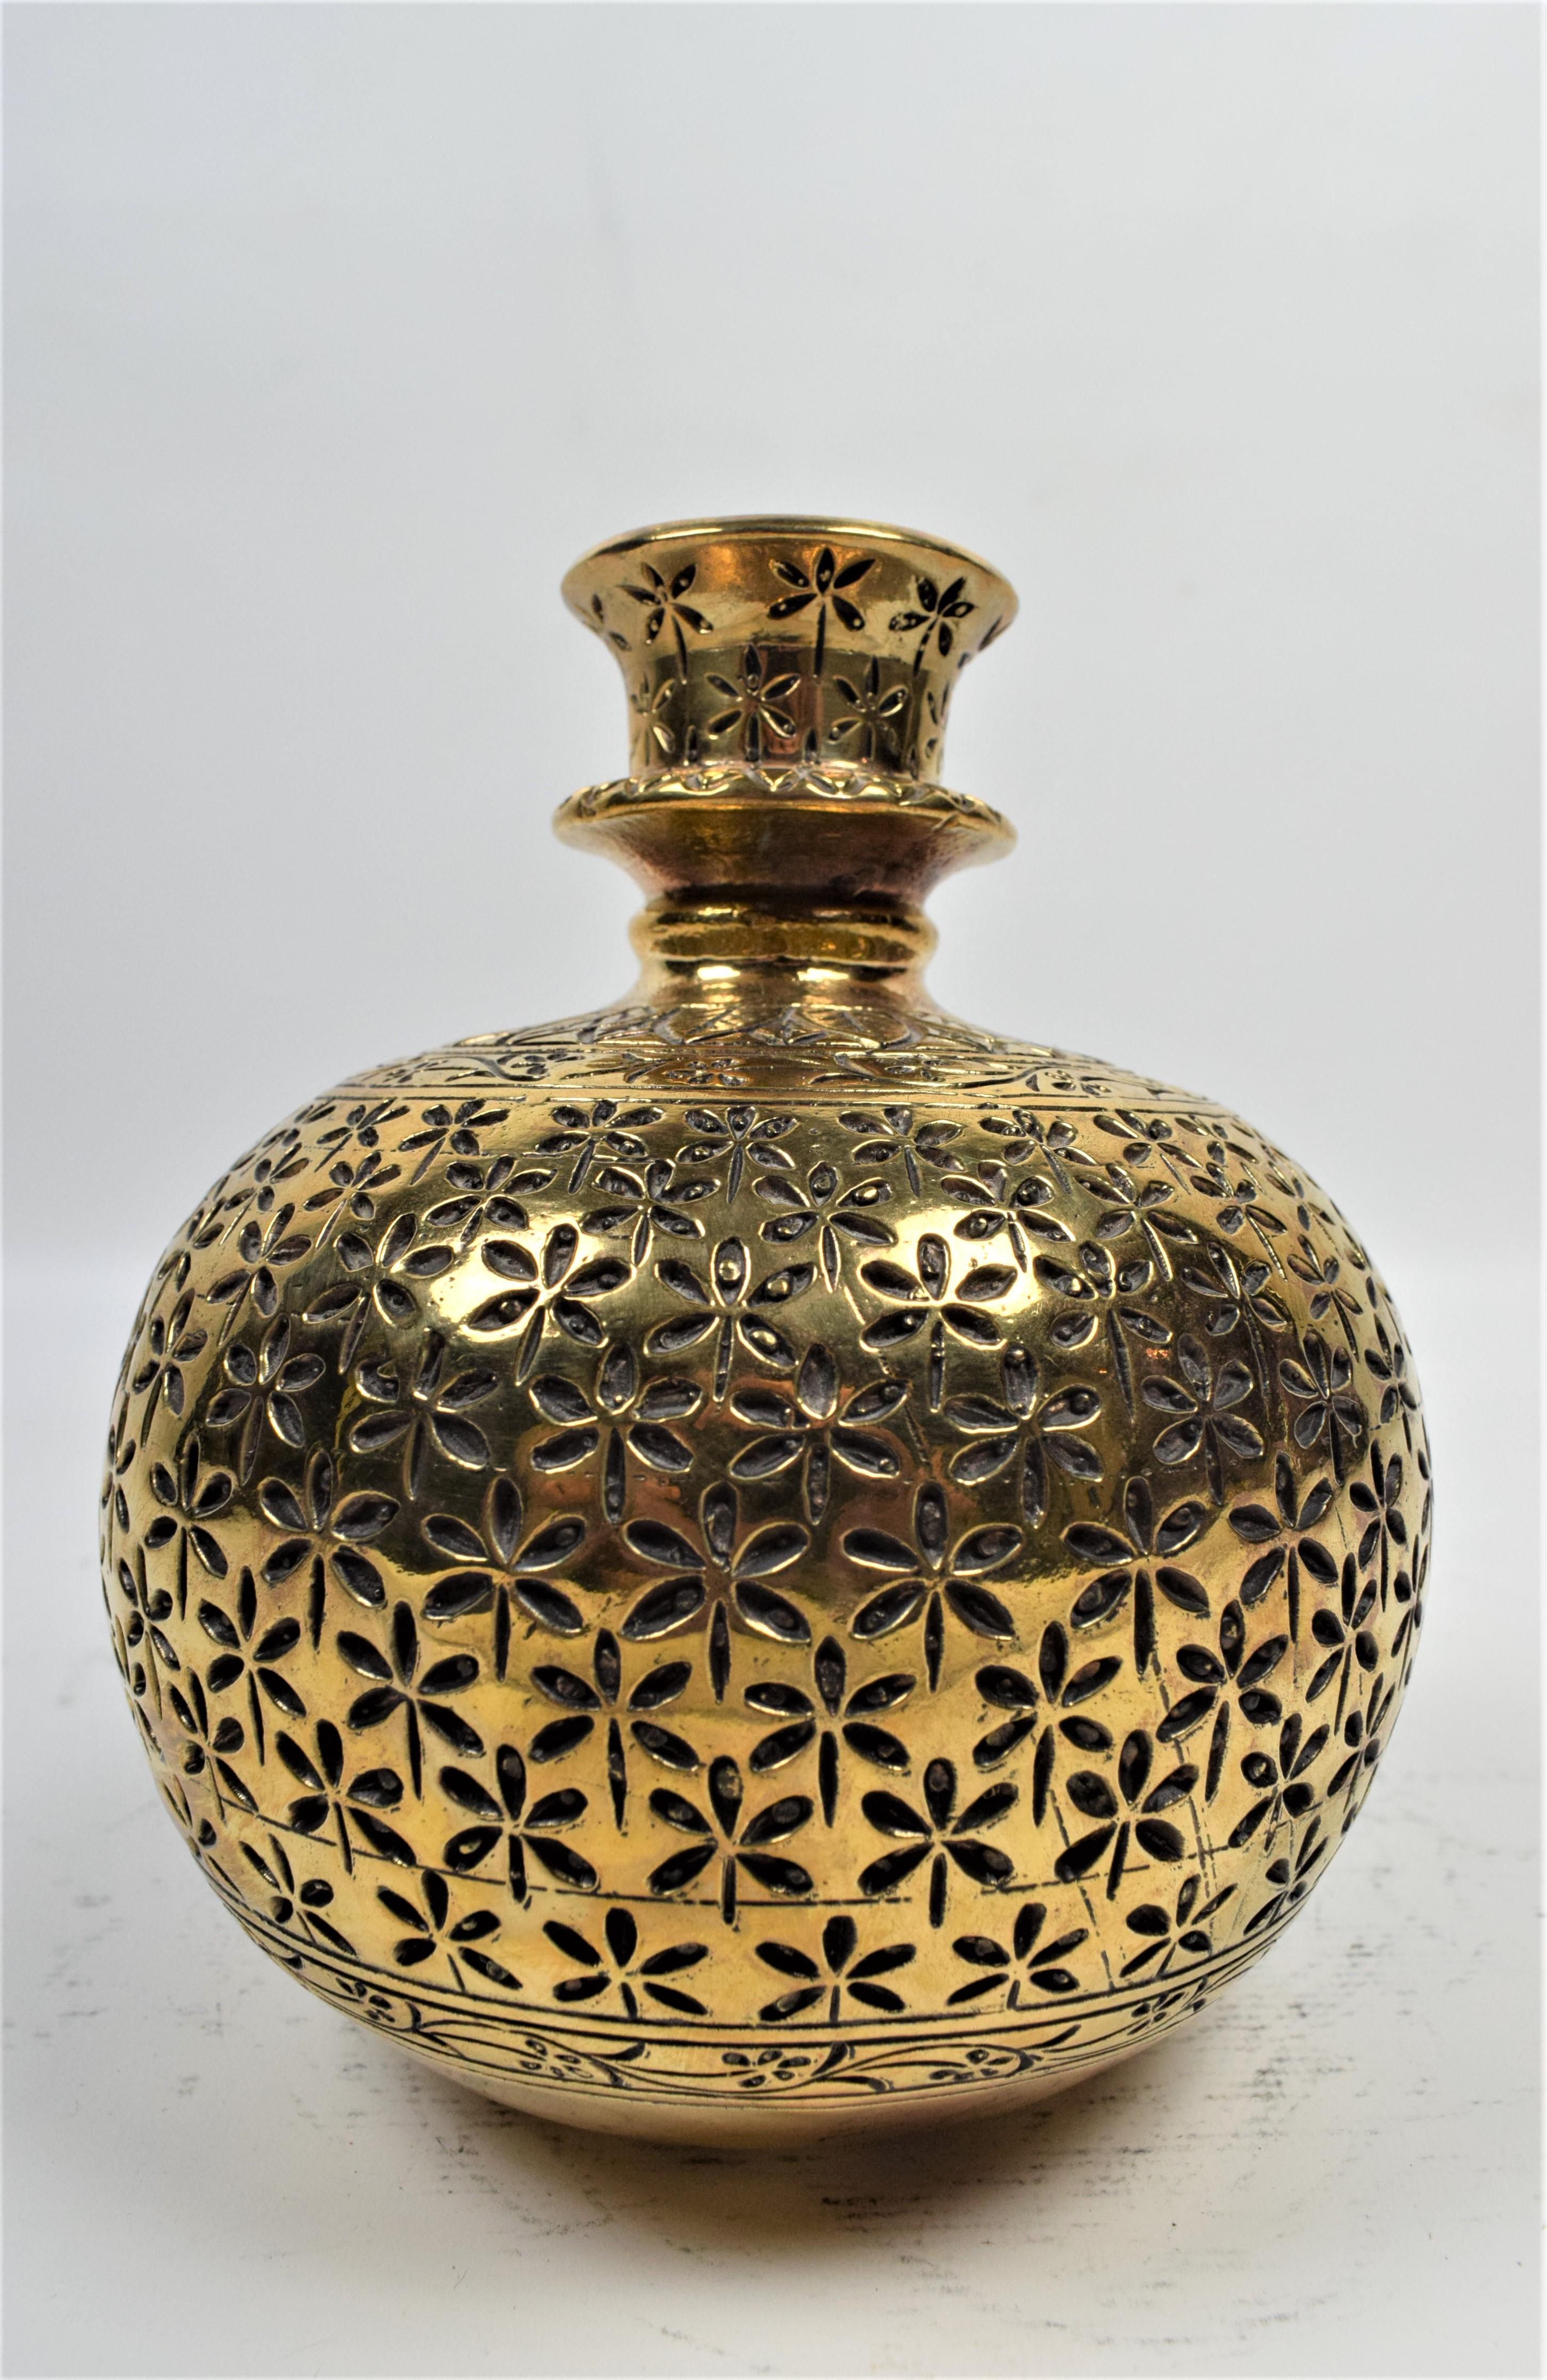 Le narguilé Mughal en laiton présente une base en laiton magnifiquement gravée et ornée de motifs floraux et géométriques complexes. La base est une œuvre d'art, mettant en valeur l'artisanat exquis et le souci du détail caractéristiques du design